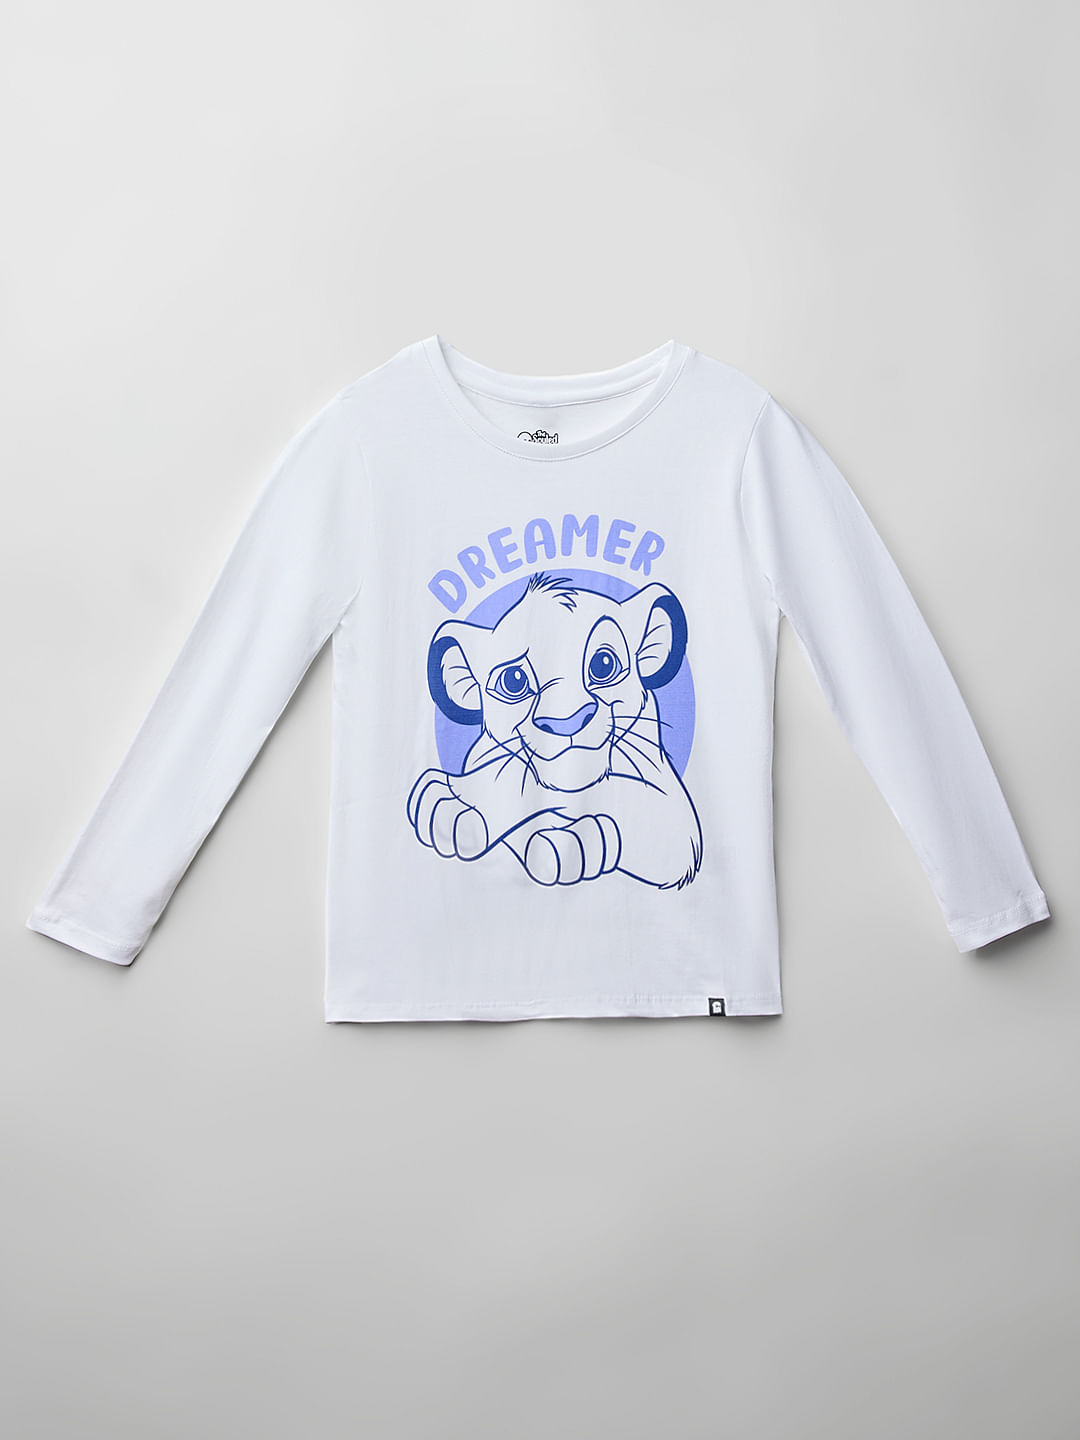 Buy The Lion King: Dreamer Girl Full Sleeves T-Shirts Online